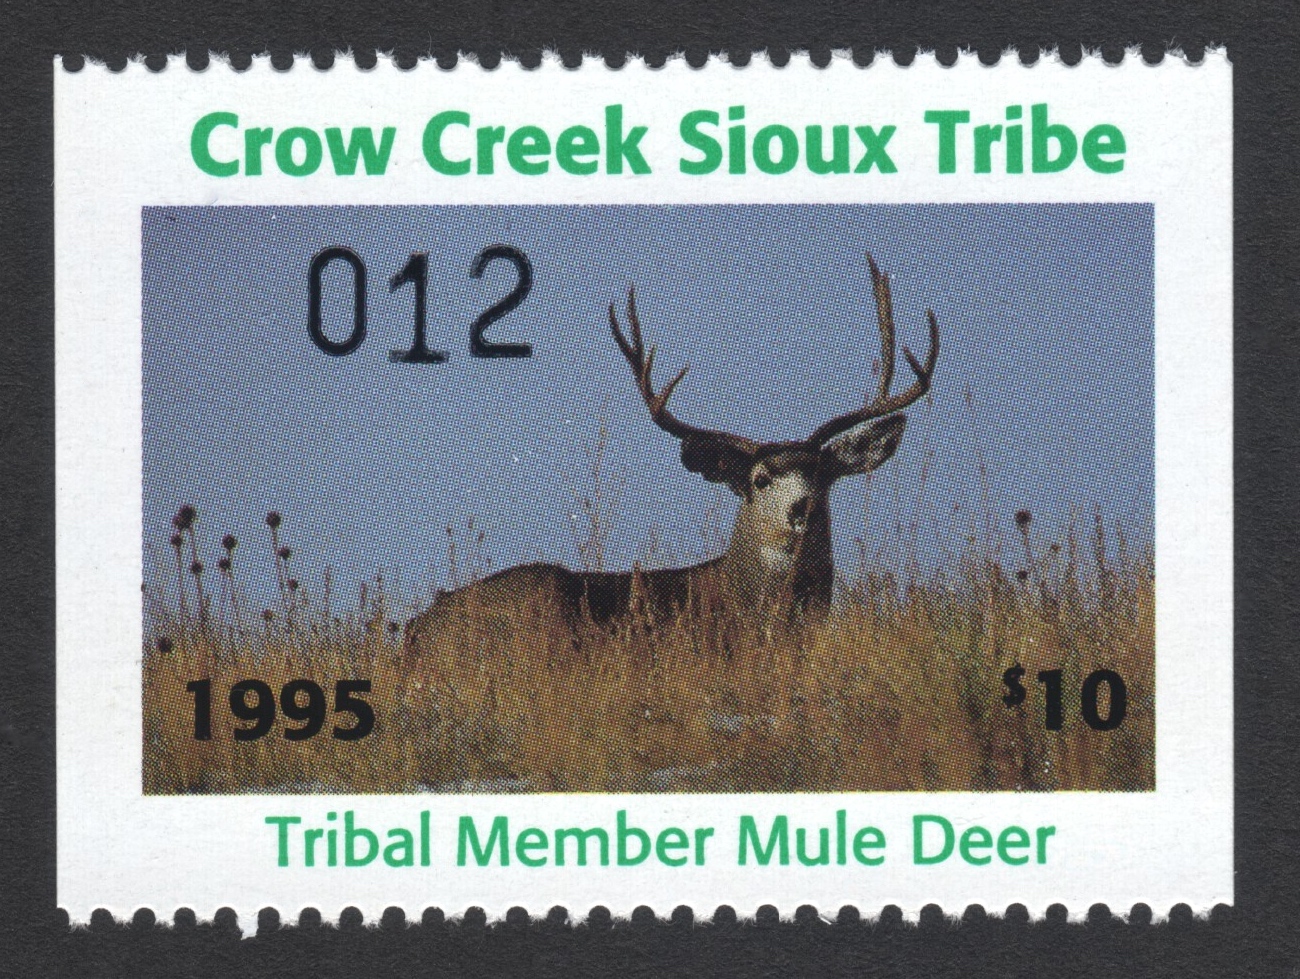 1995 Crow Creek Tribal Member Mule Deer